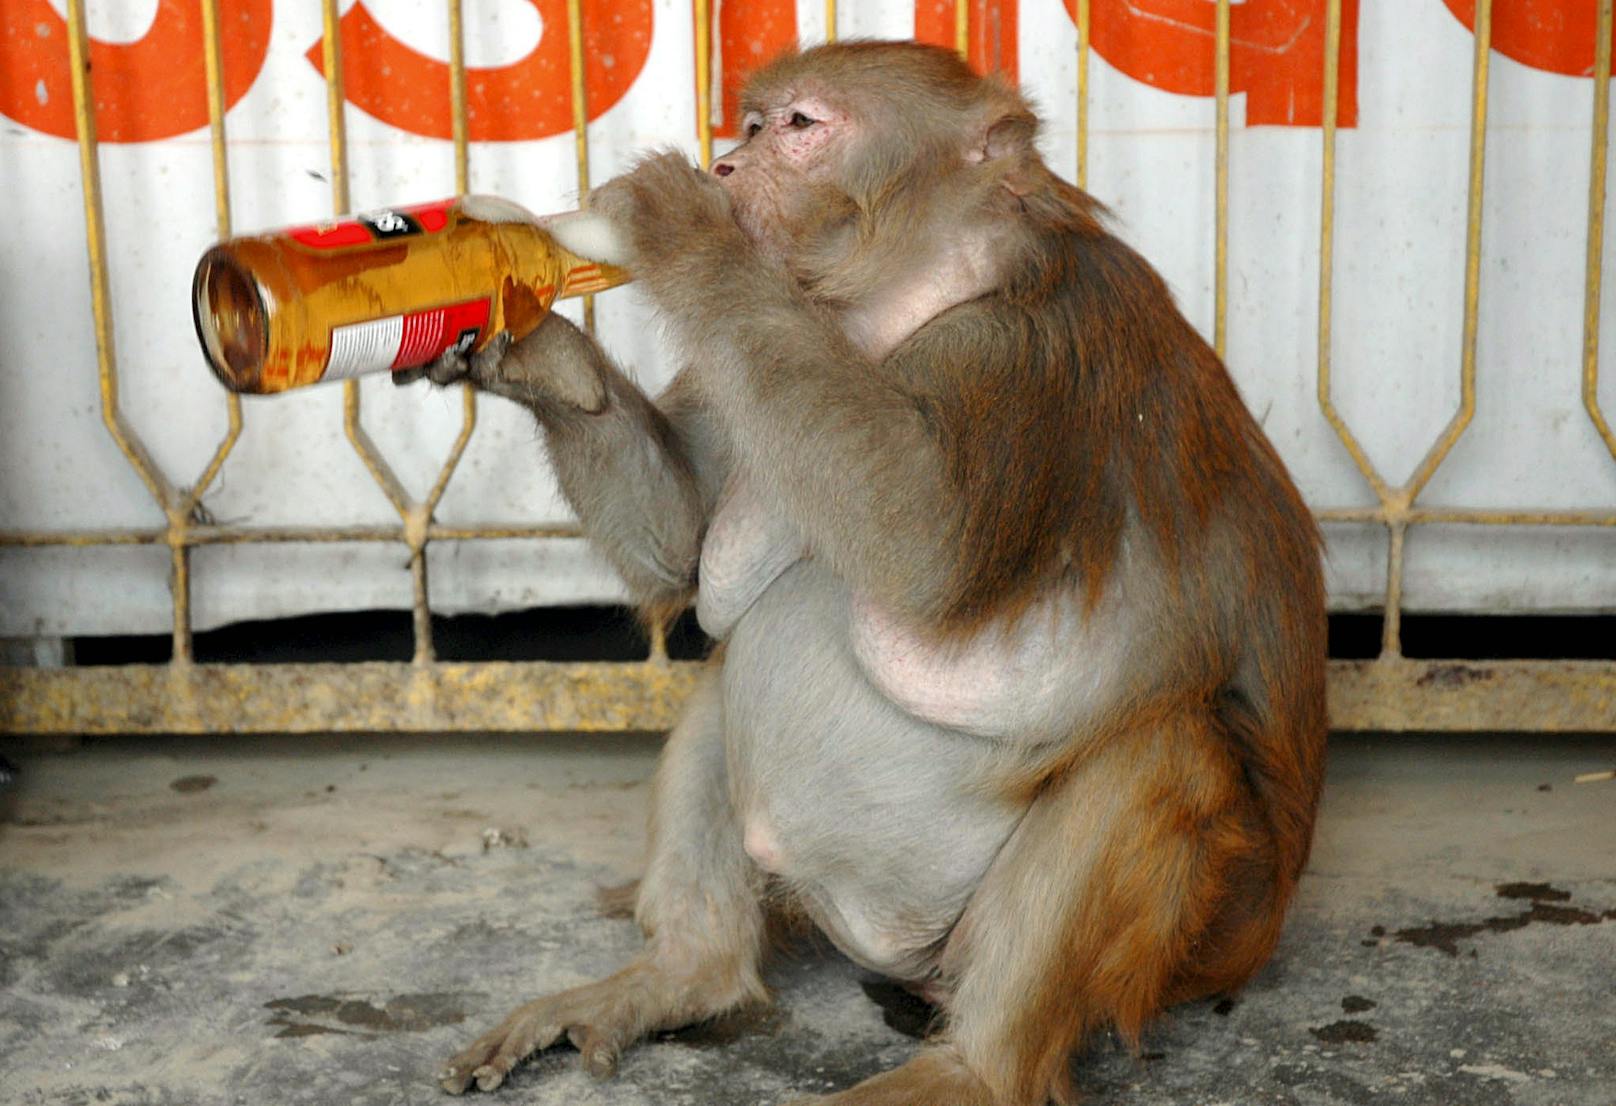 Alkoholsucht unter Affen,&nbsp; leider kein Einzelfall. Das Bild zeigt ein Weibchen namens Banno mit einem Bier in den Händen, aufgenommen bei einer Raststätte in Uttar Pradesh, 2006.